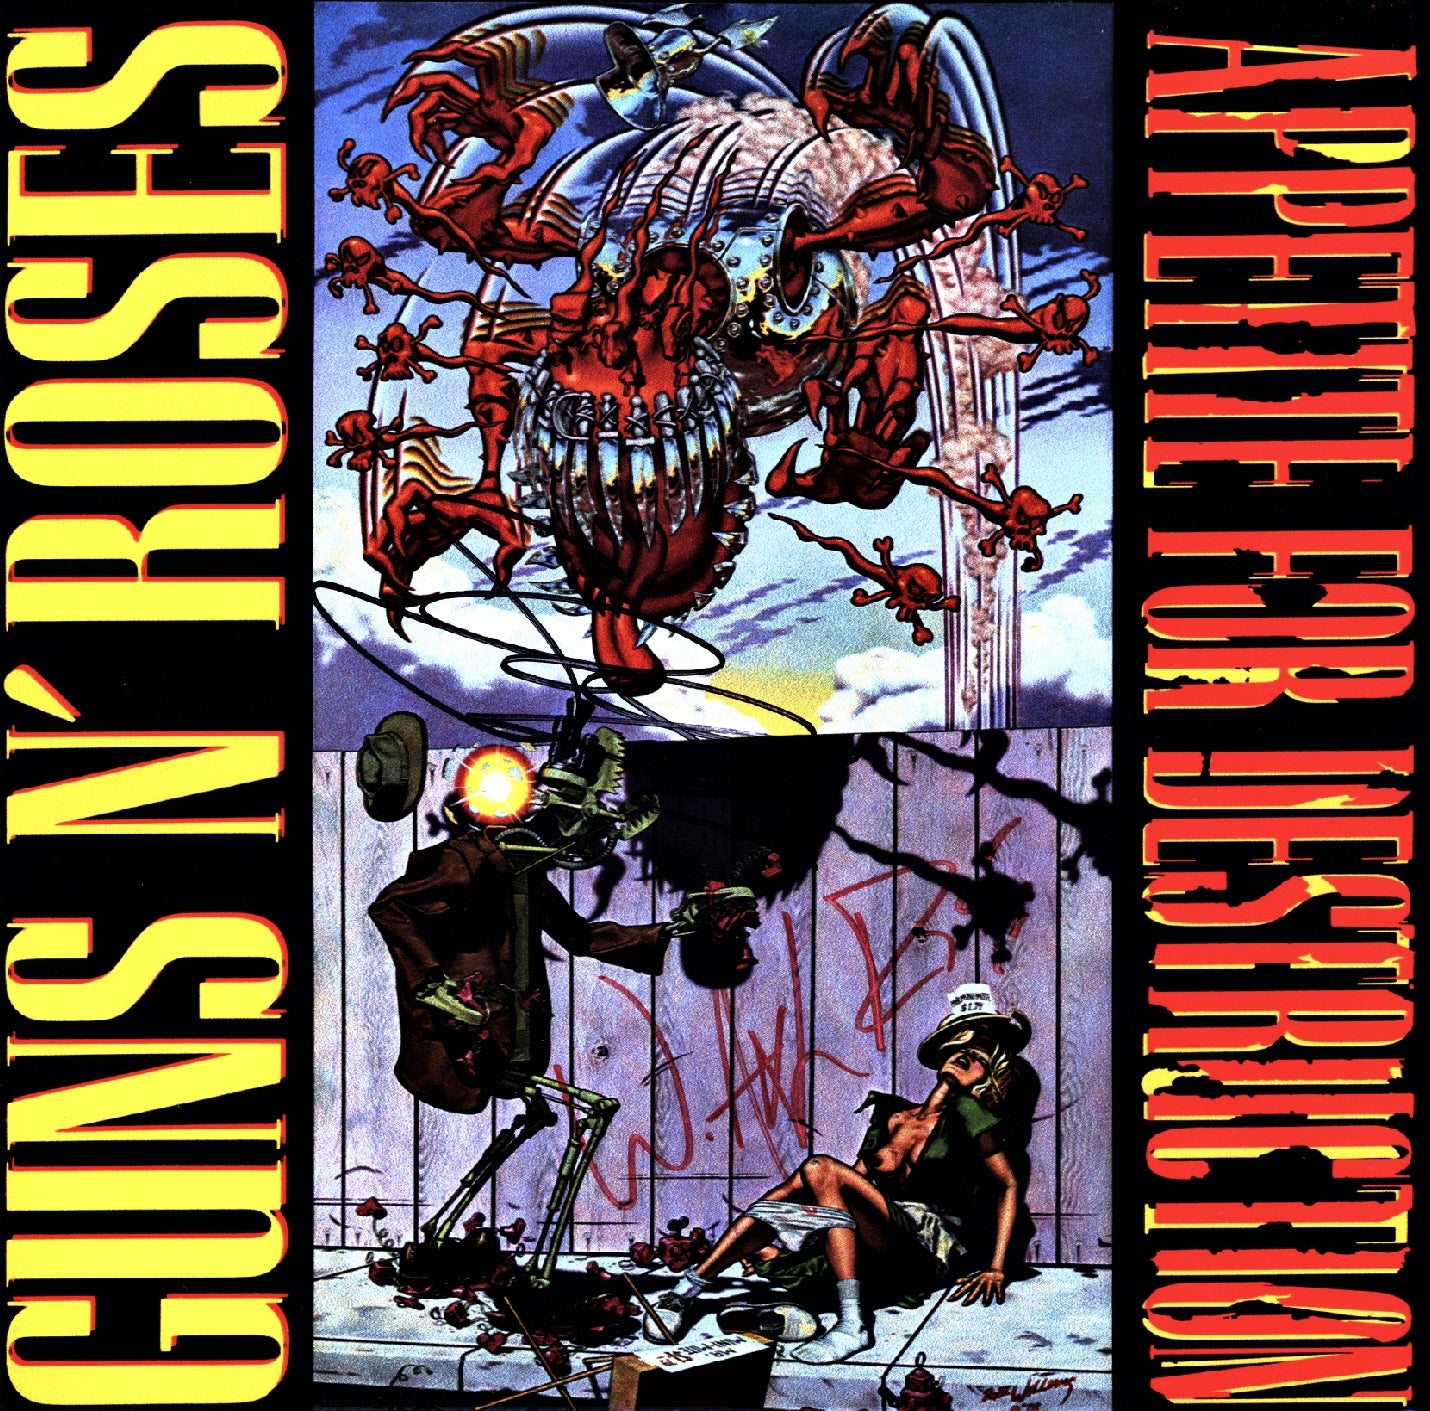 All 79 Guns N' Roses Songs, Ranked